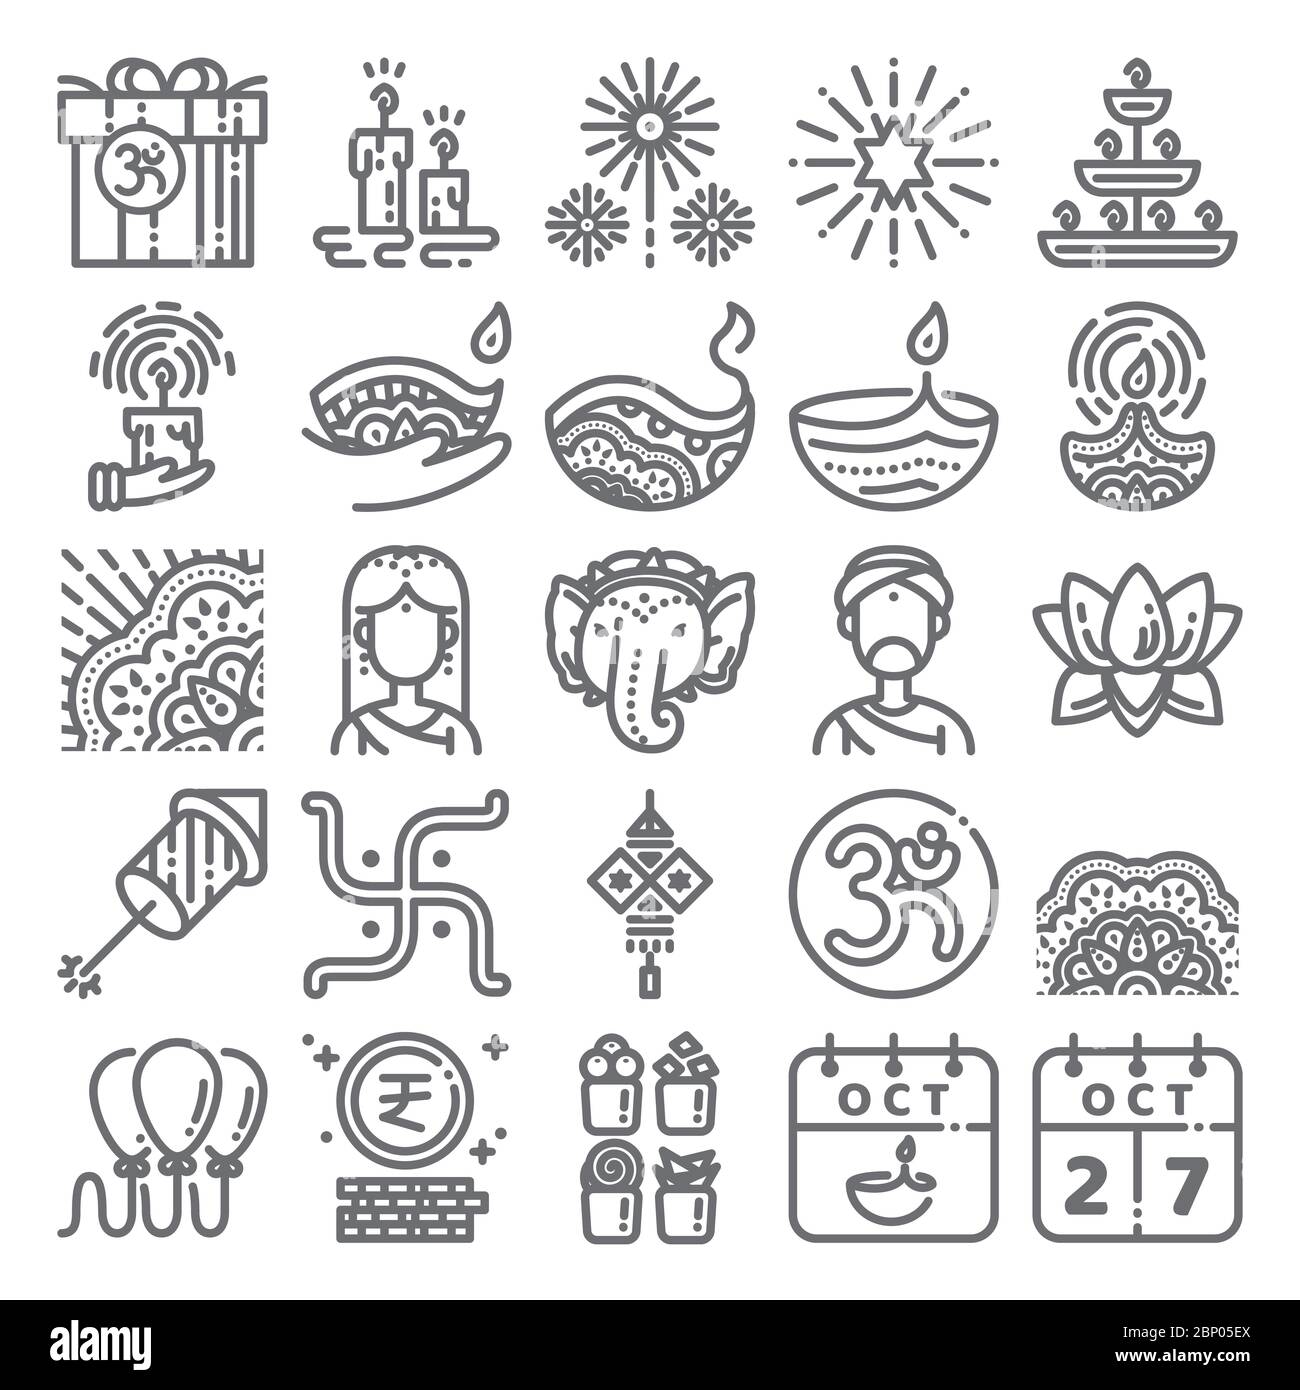 Diwali Symbol gesetzt. Linie Kunst Ikone für Deepavali Festival feiern, hinduismus, Indien, Hindu. Design von Symbolen mit 48 Pixeln. Stock Vektor